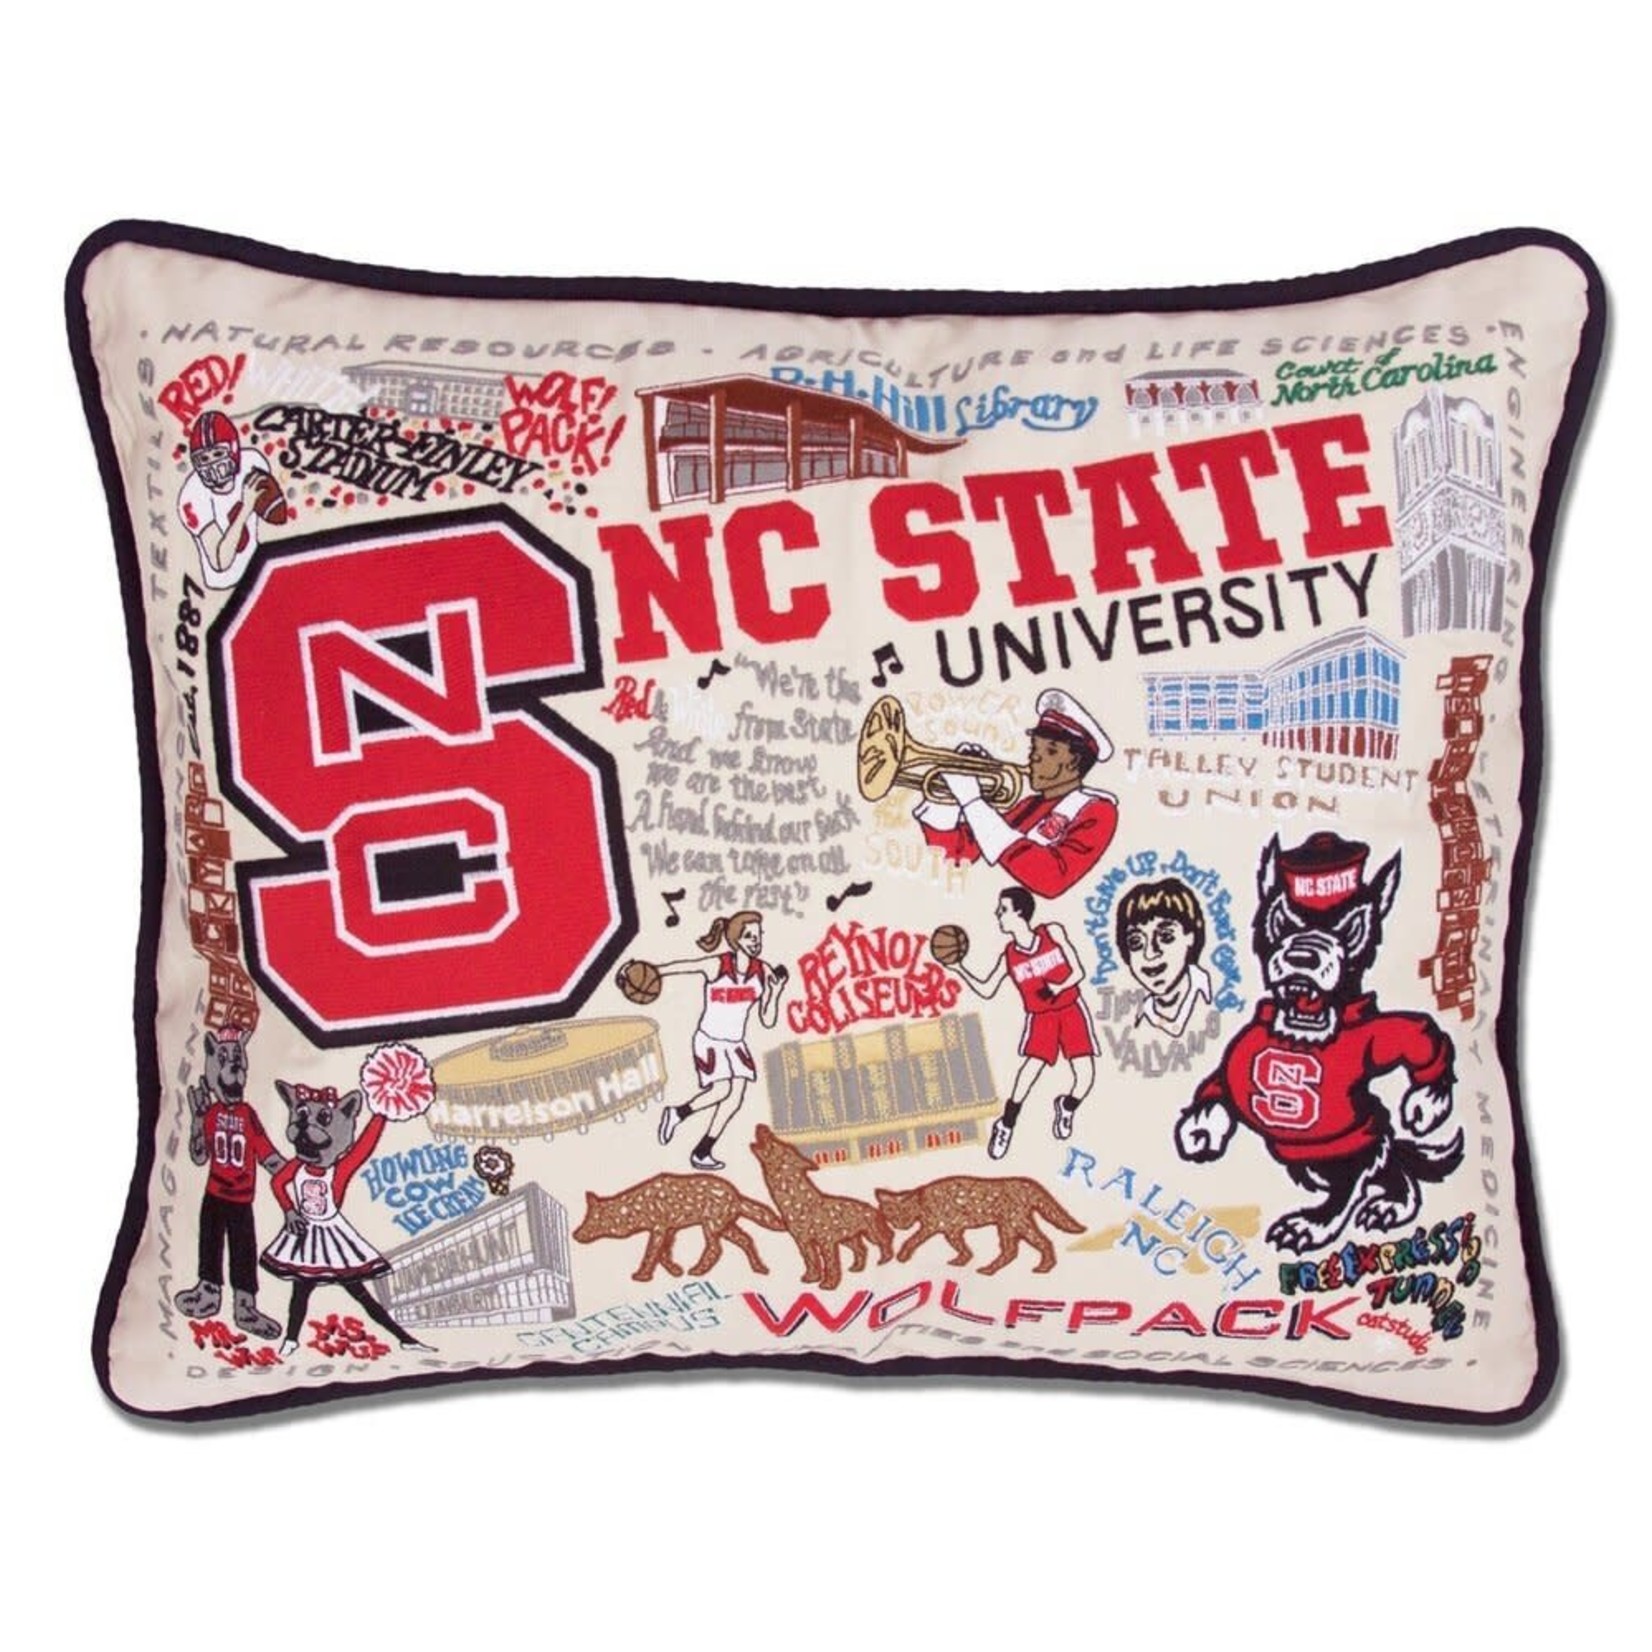 Catstudio Catstudio Collegiate North Carolina State University Pillow